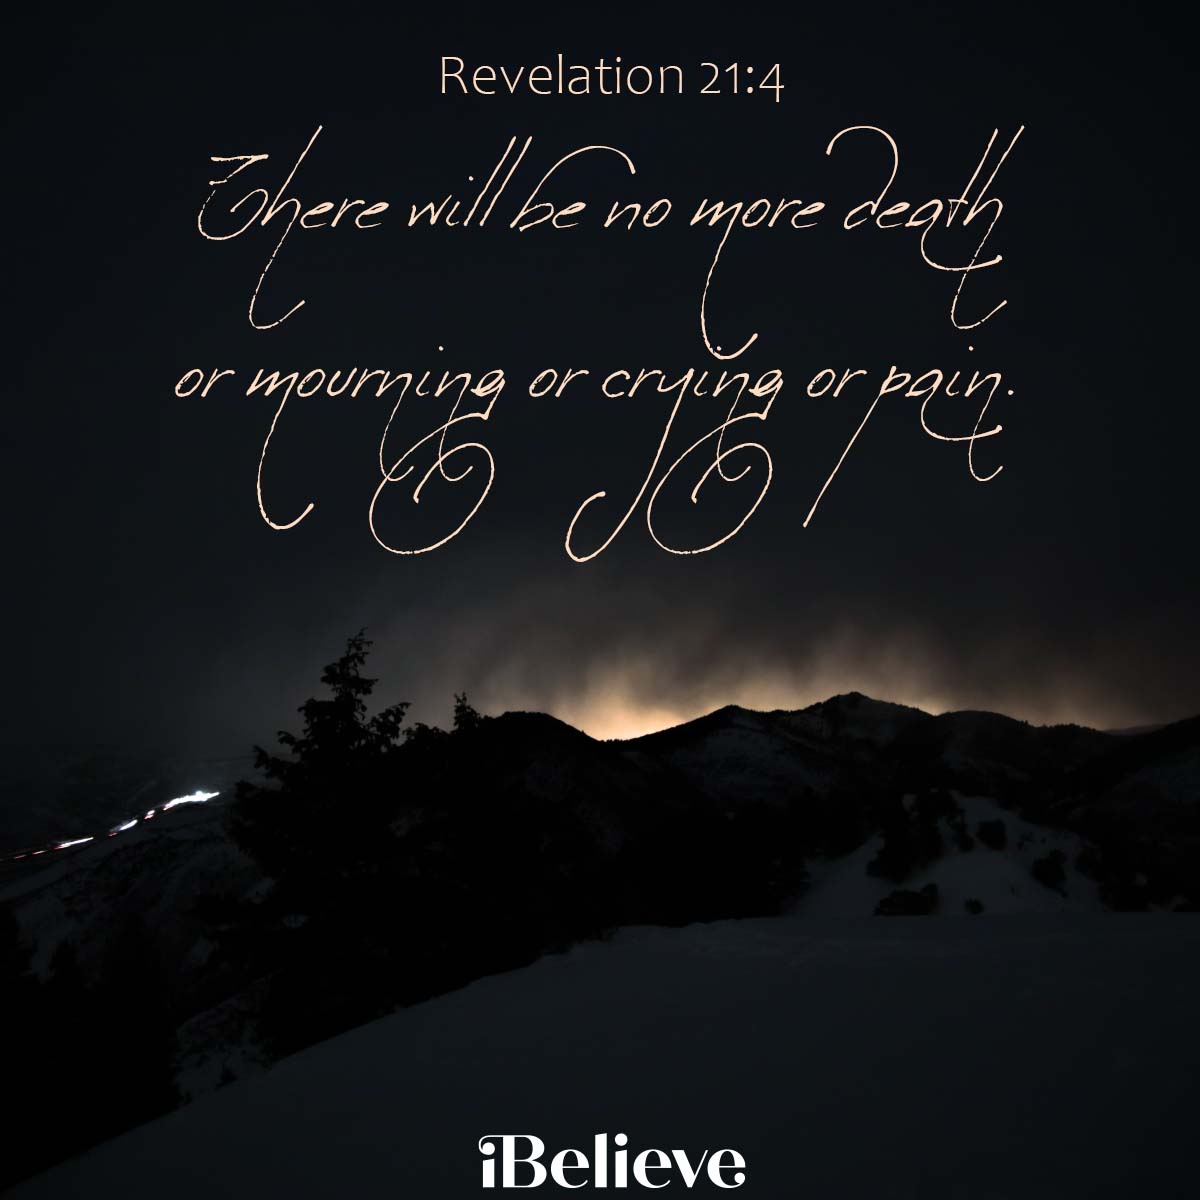 Revelation 21:4, inspirational image